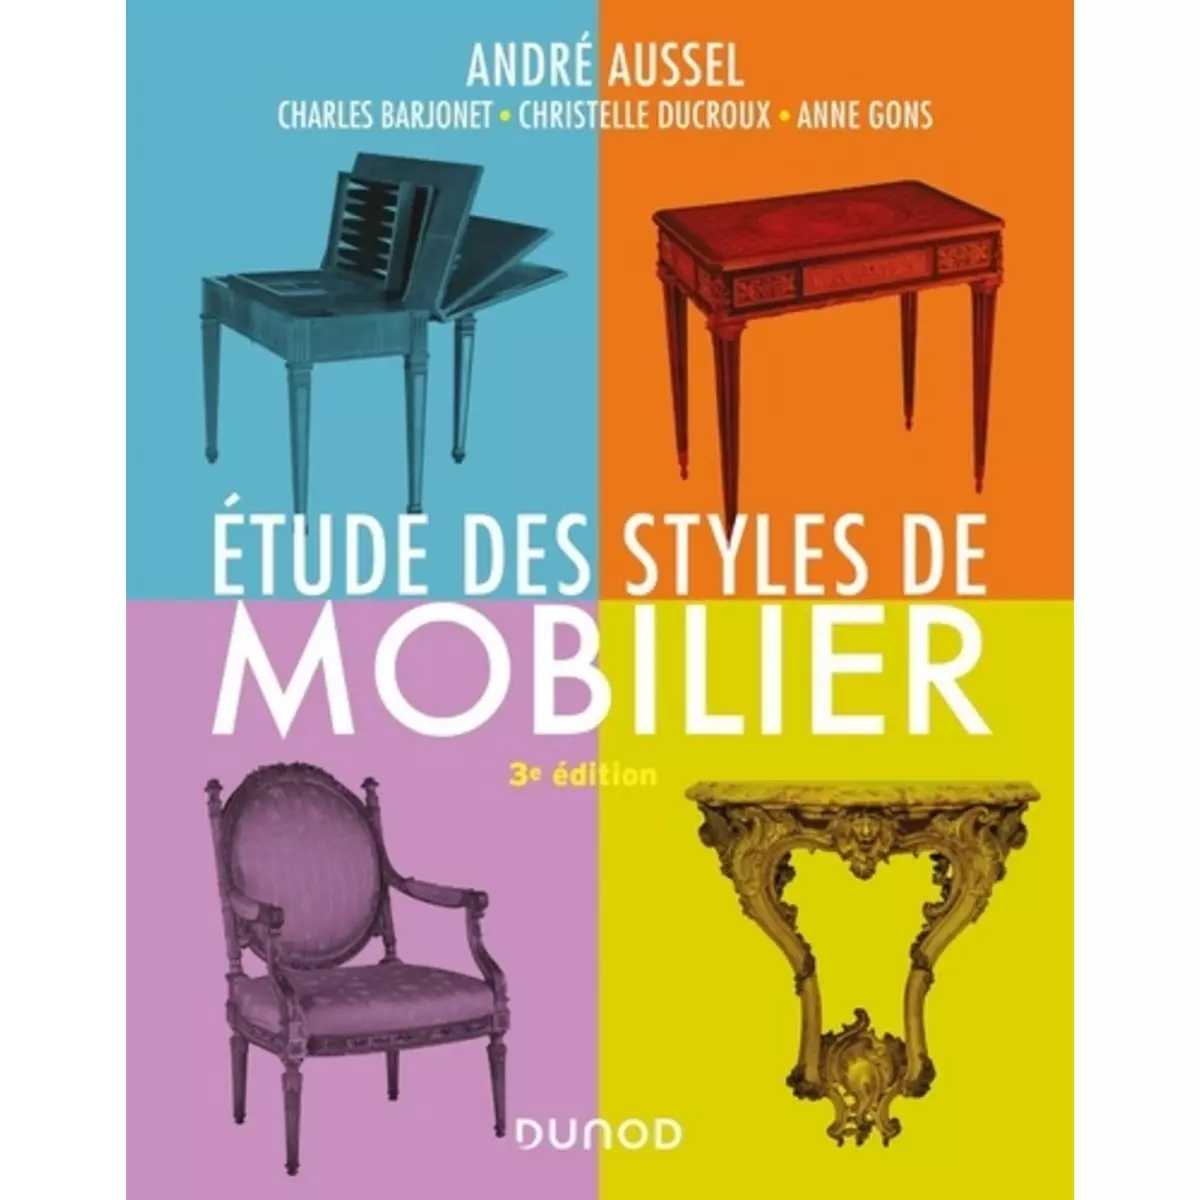  ETUDE DES STYLES DE MOBILIER. 3E EDITION, Aussel André